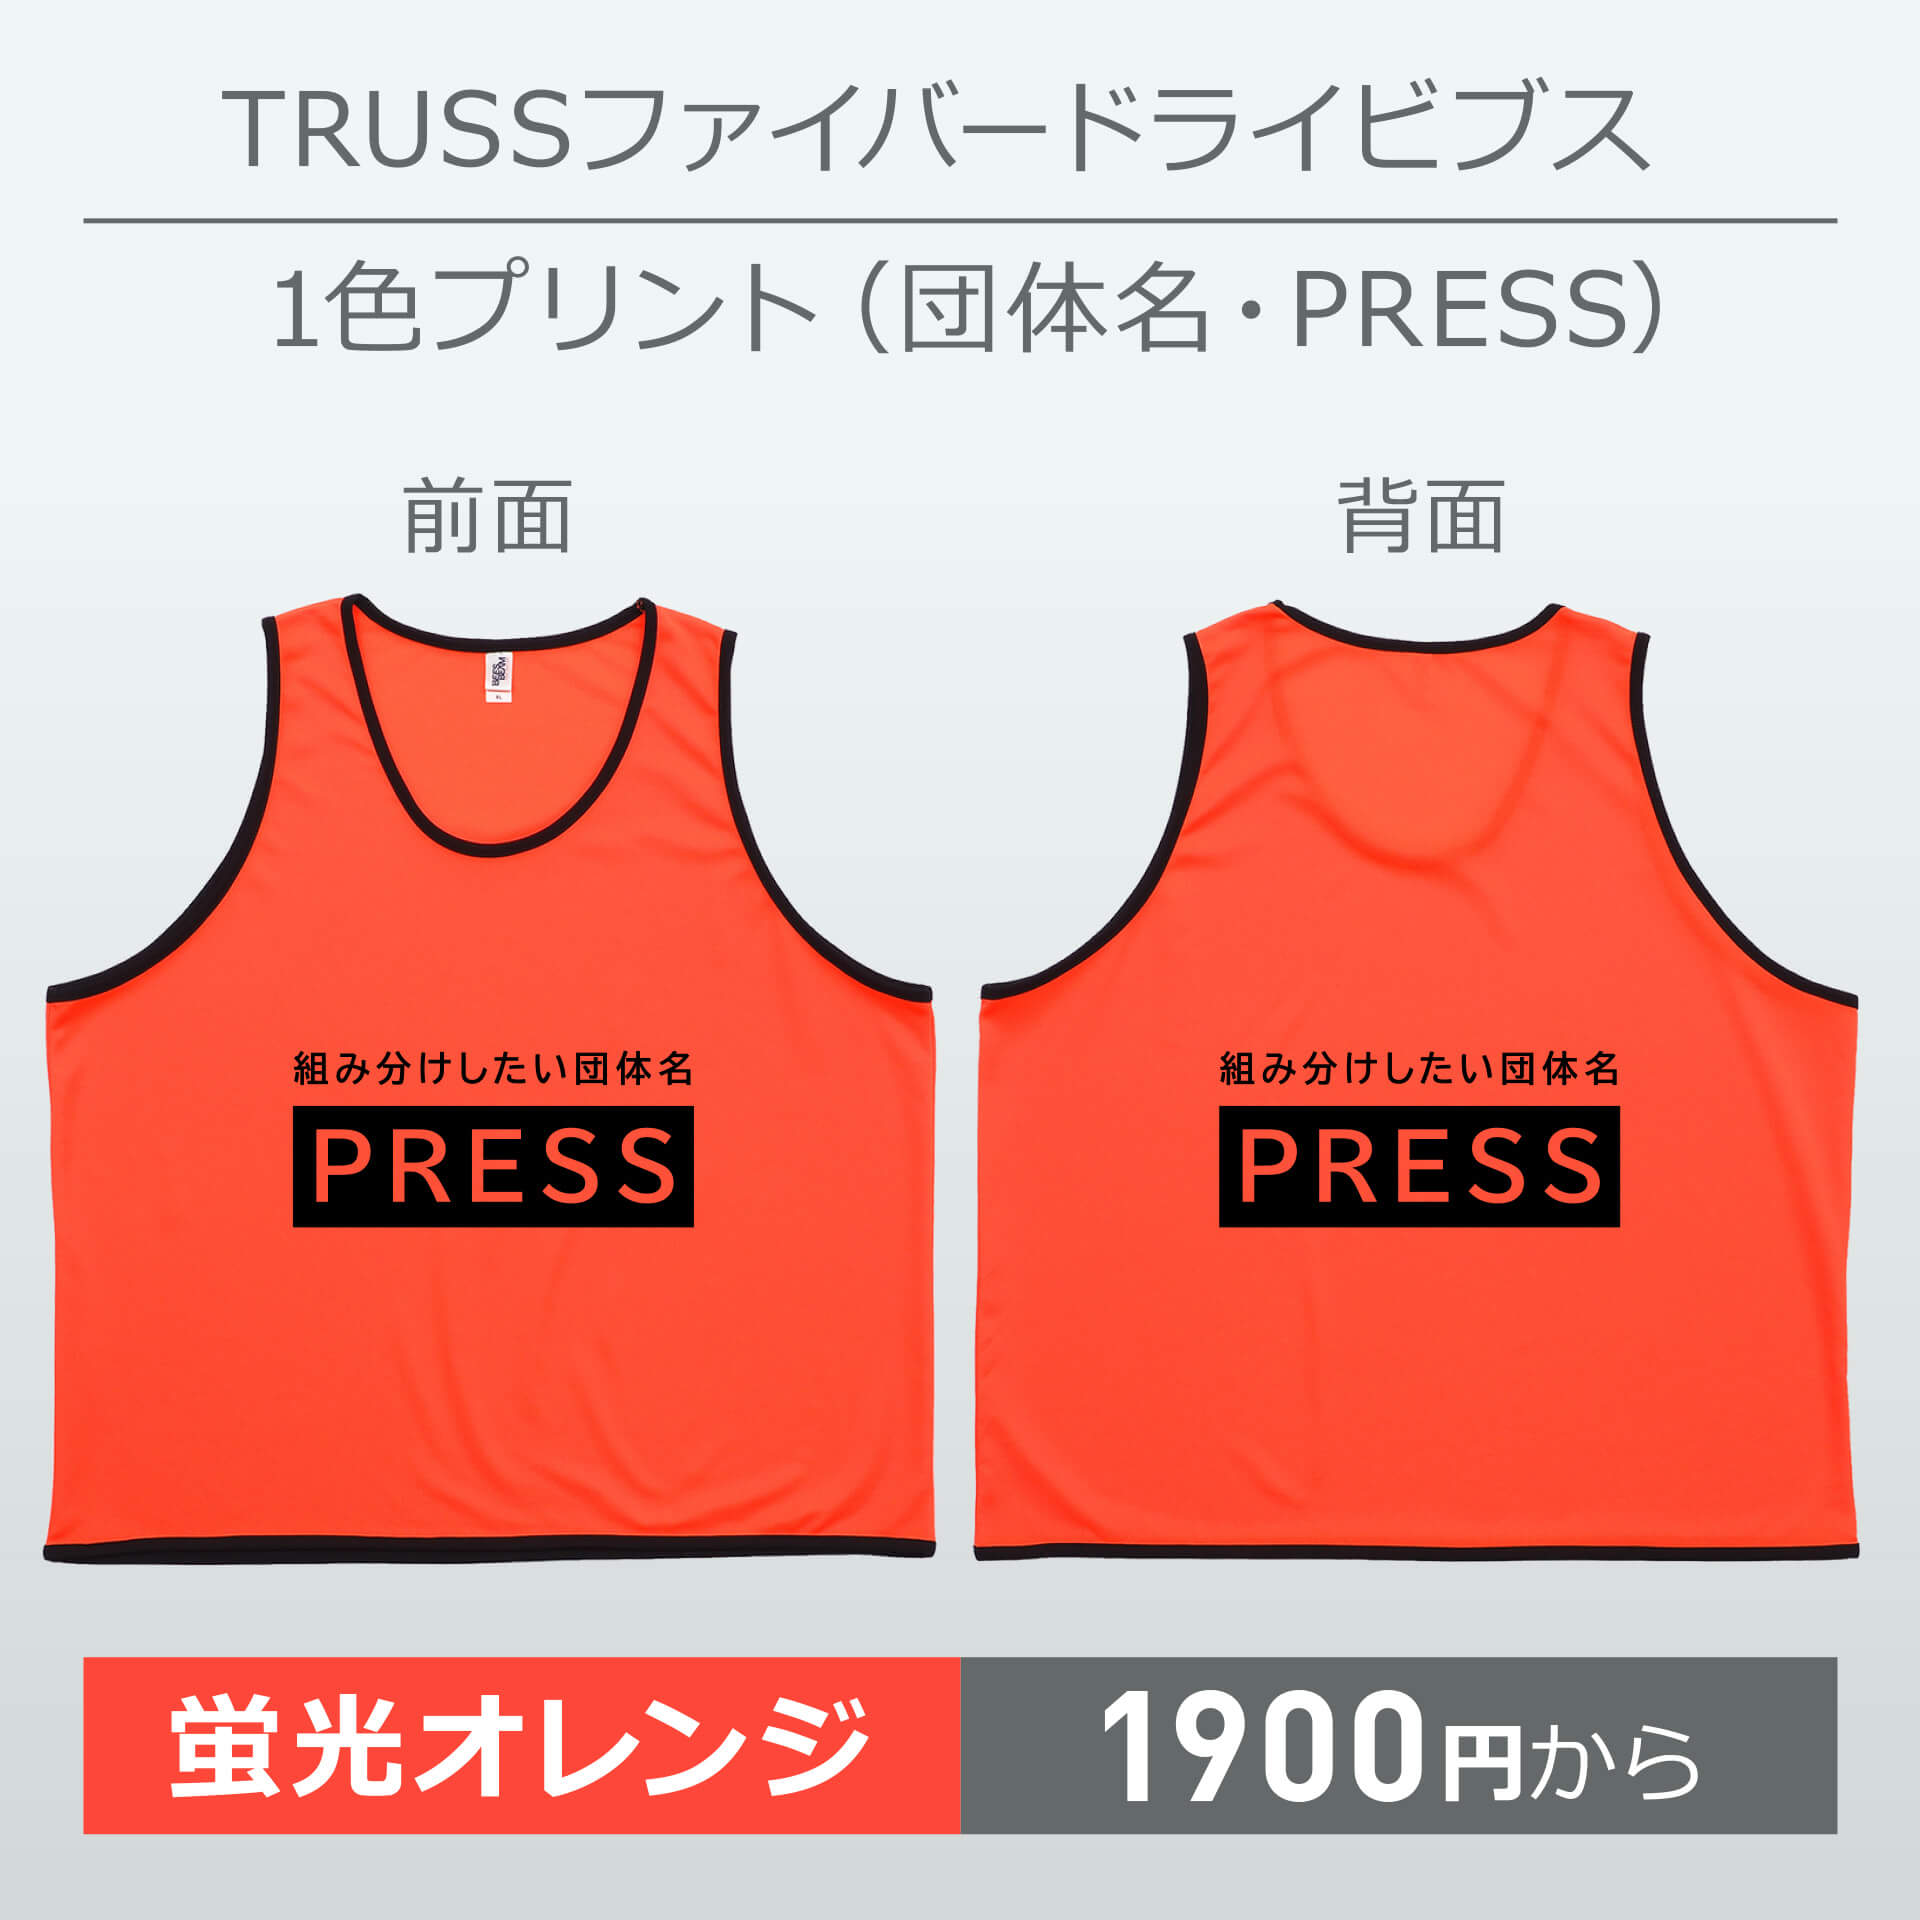 トラス・ファイバードライビブス・1色プリント(団体名・PRESS)・蛍光オレンジ